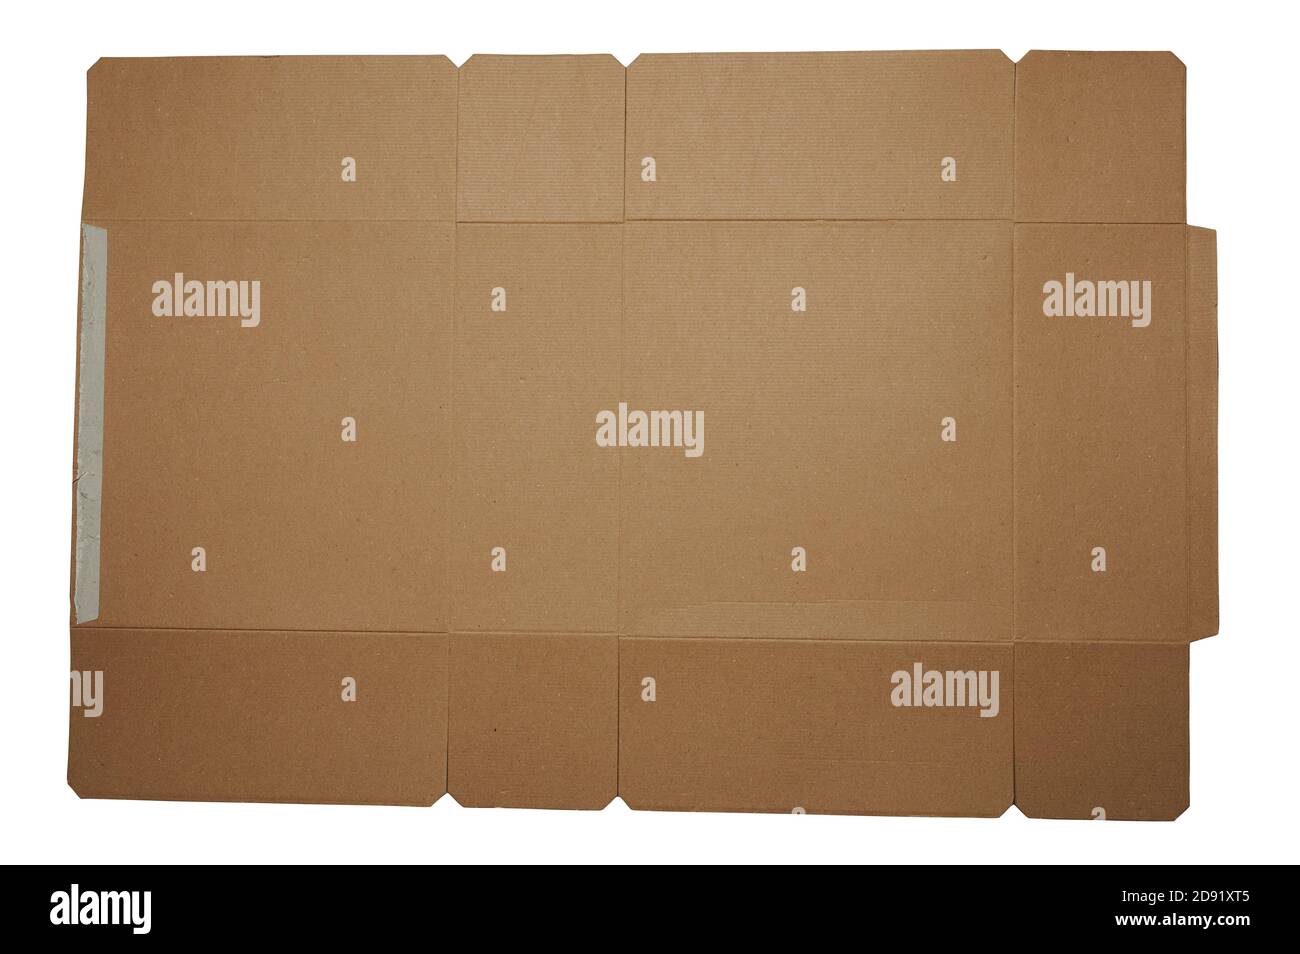 Flat paper unfolded box shape isolated on white studio background Stock Photo